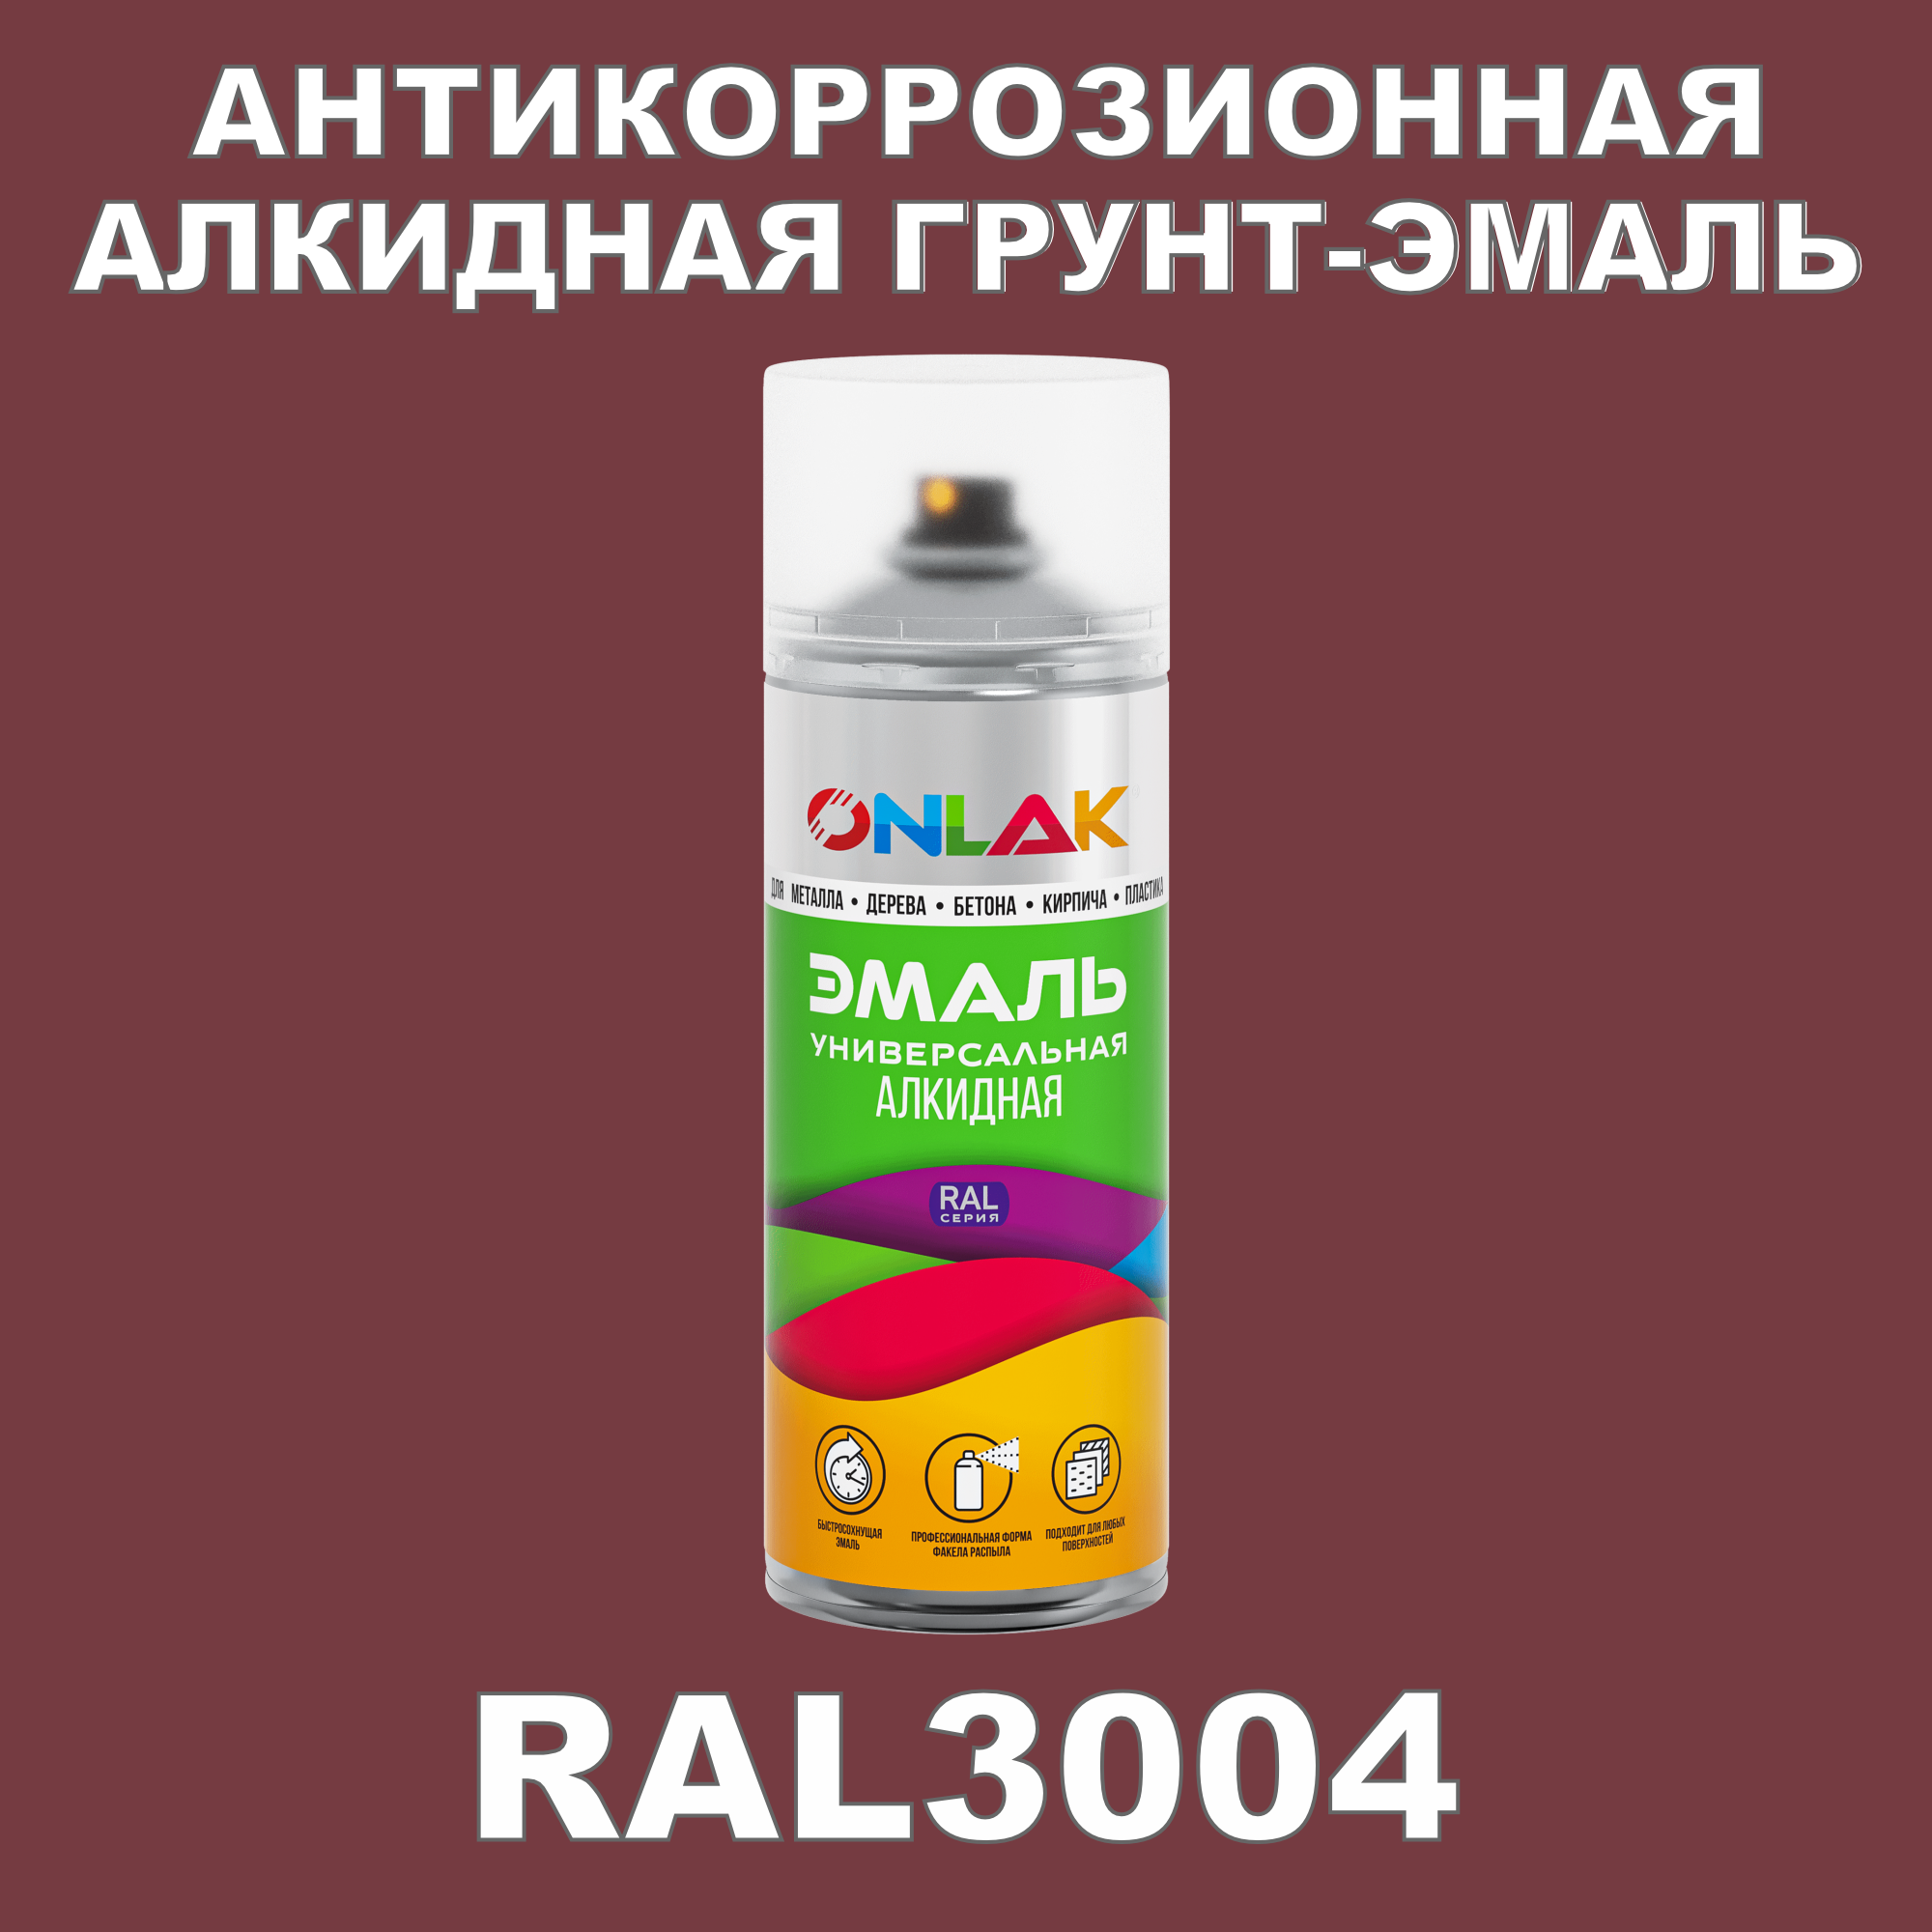 Антикоррозионная грунт-эмаль ONLAK RAL3004 полуматовая для металла и защиты от ржавчины эмаль аэрозольная inral universal вишневая ral3004 400 мл 26 7 6 023